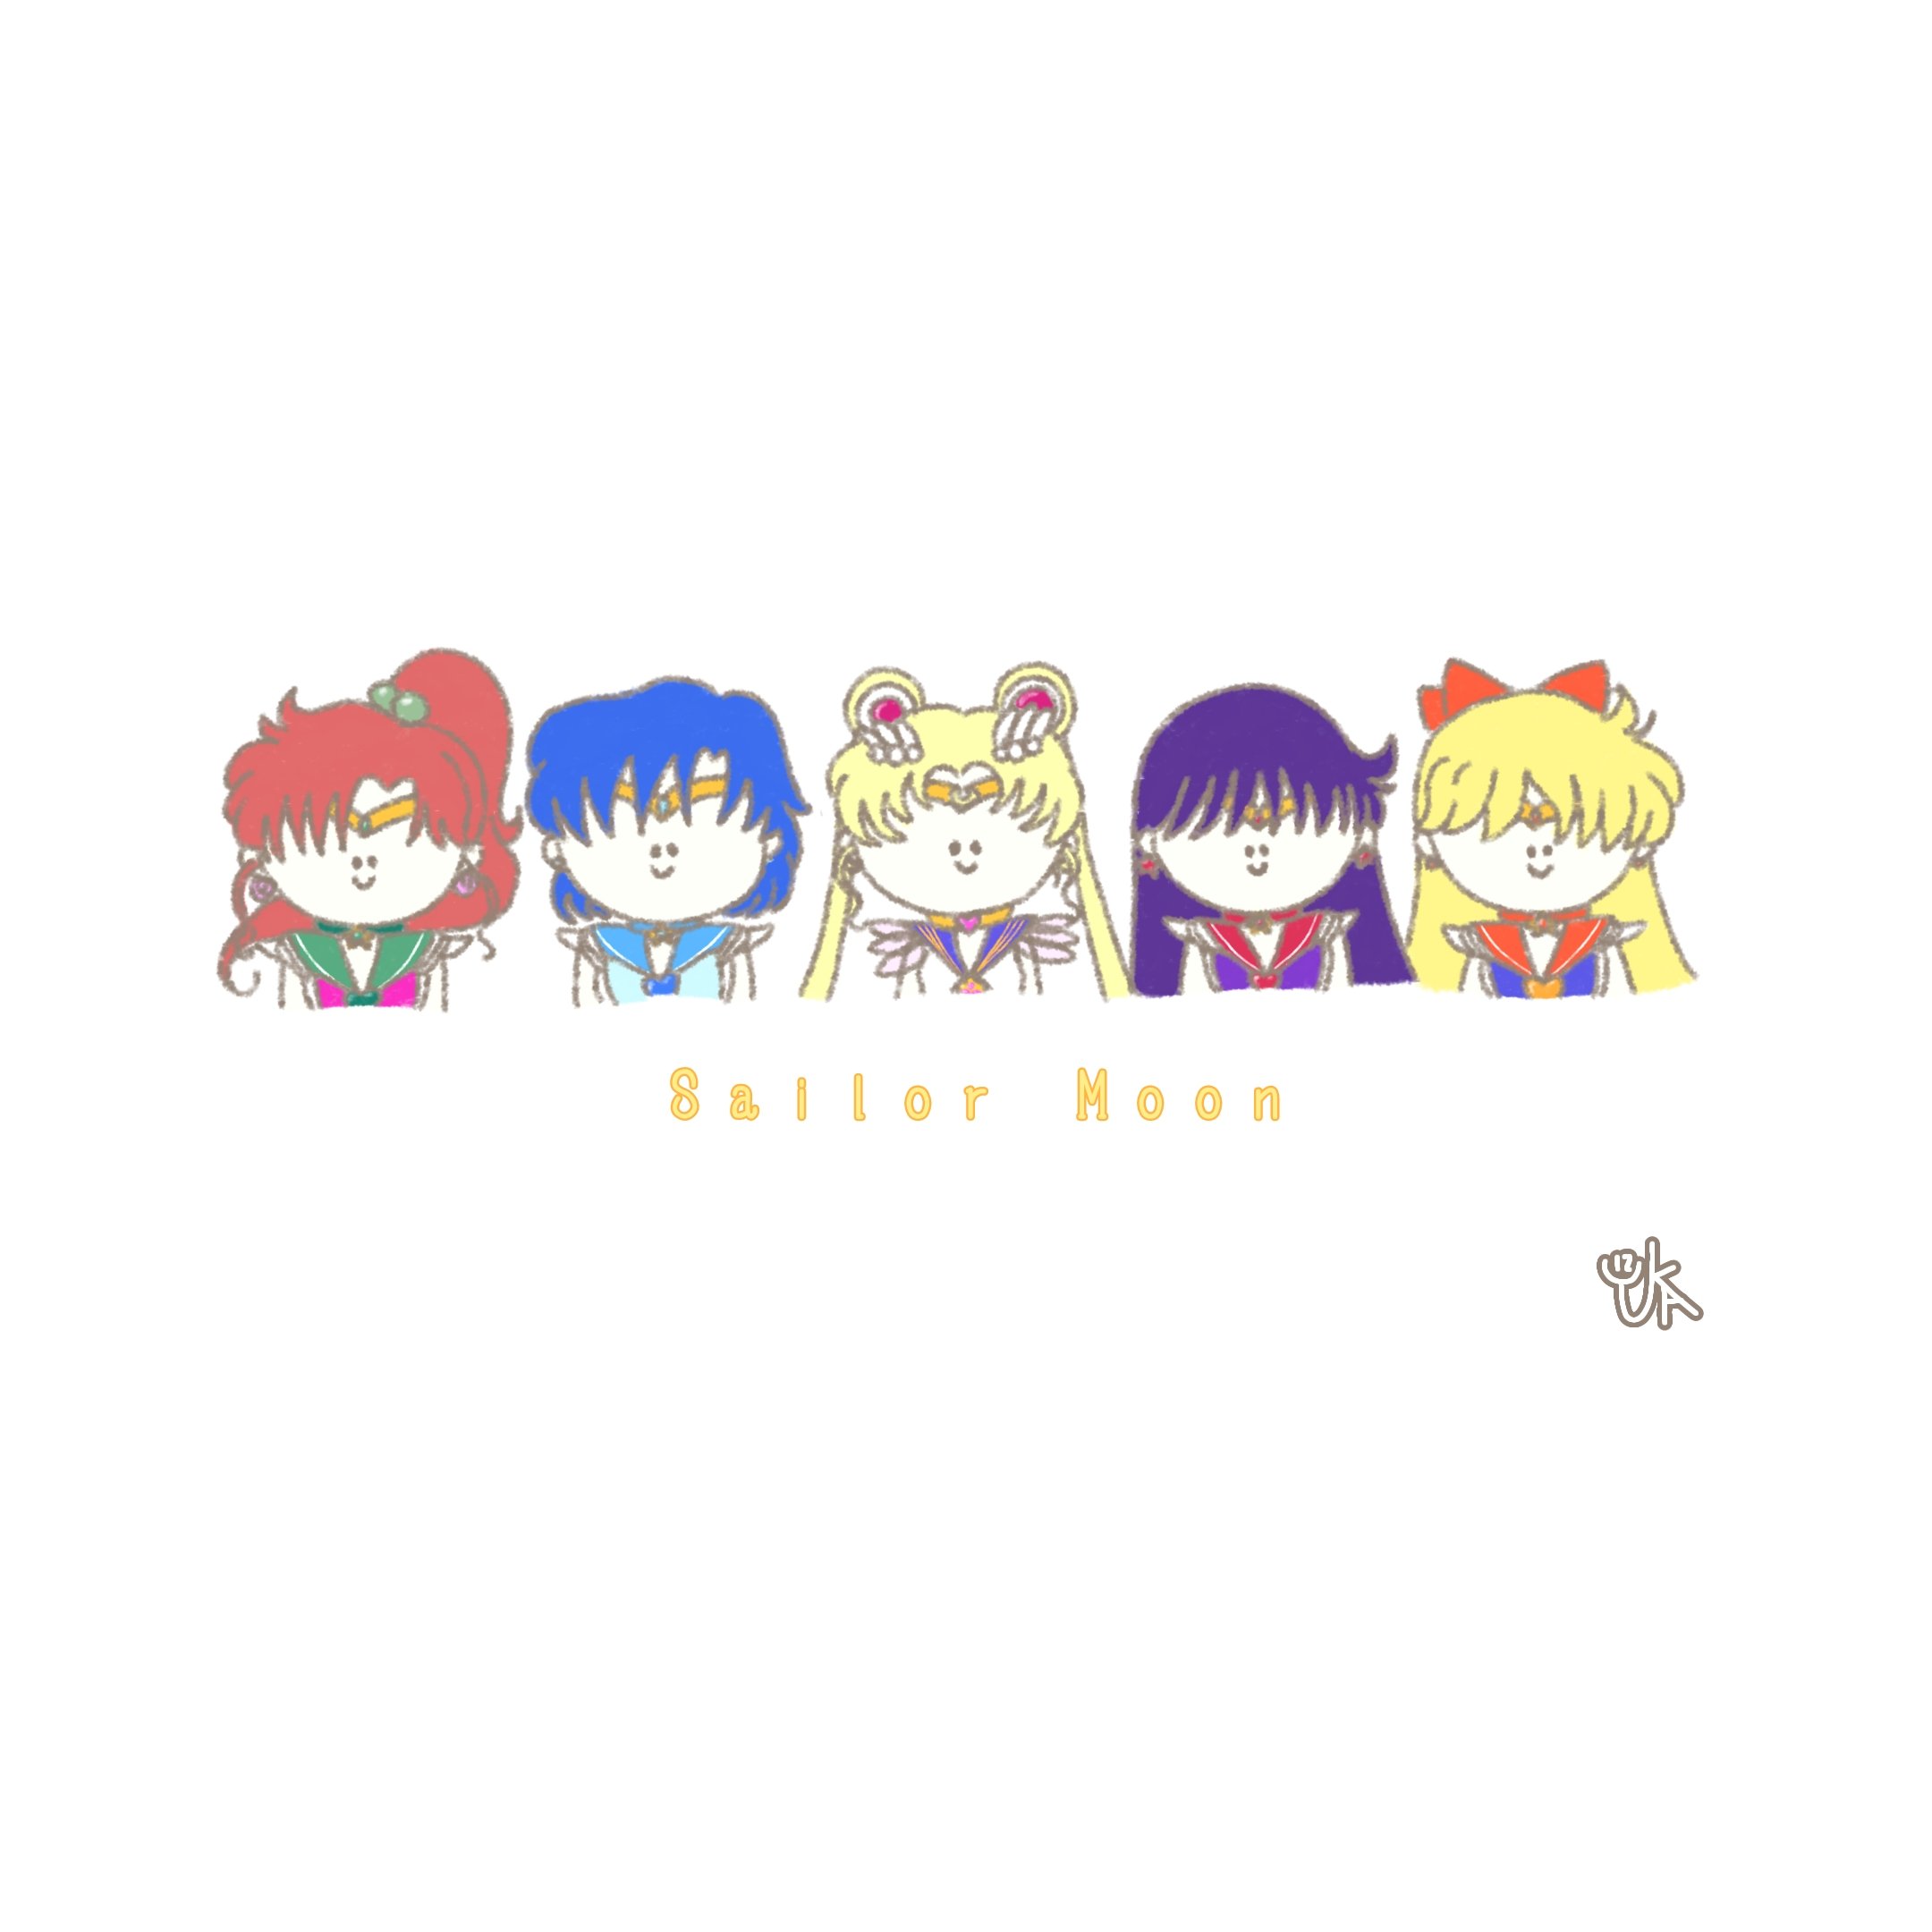 ゆかいず Sailor Moon 完 できあがり Ibispaintx Illustration イラスト おえかき お絵描き 絵 ゆるいイラスト ゆるい セーラームーン Sailormoon ファンアート T Co Iqc7ejrumu Twitter